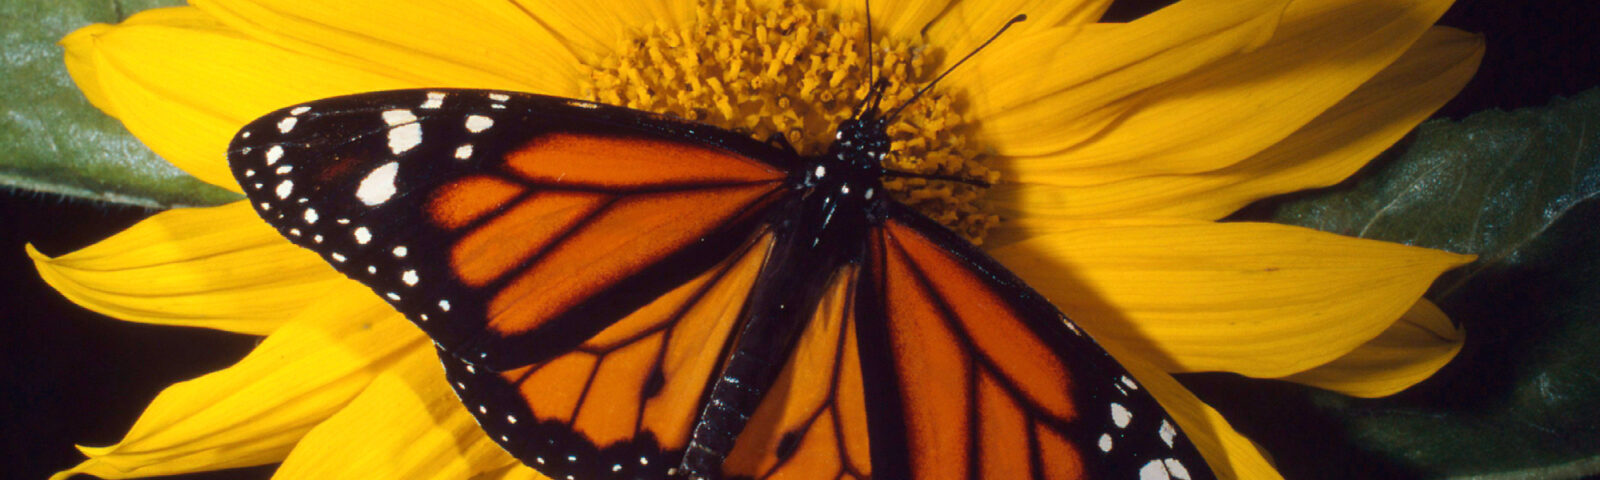 Oransje og svart sommerfugl (Monark) på gul blomst